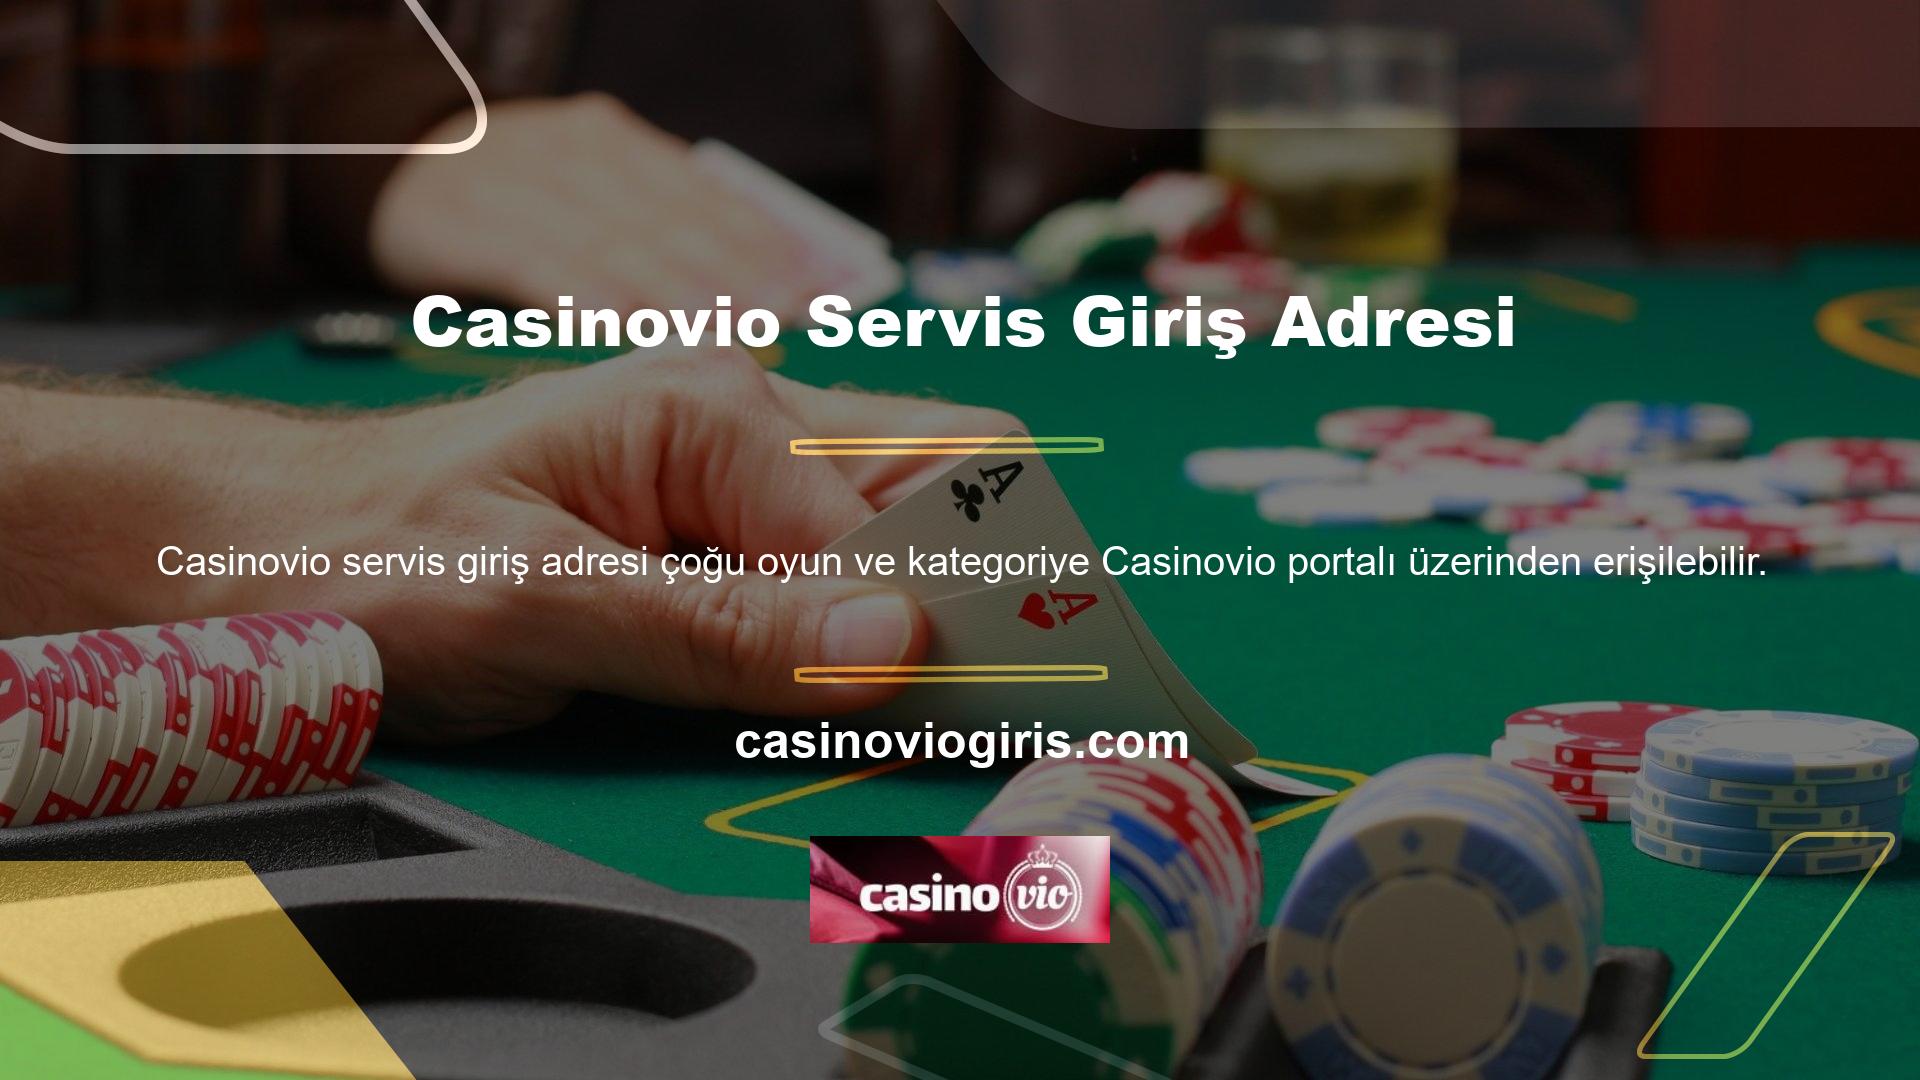 Casinovio giriş adresleri yakında sitede yayınlanacak ve güncellenecektir, bu nedenle hem oyuncular hem de casino meraklıları için sürpriz olmamalıdır